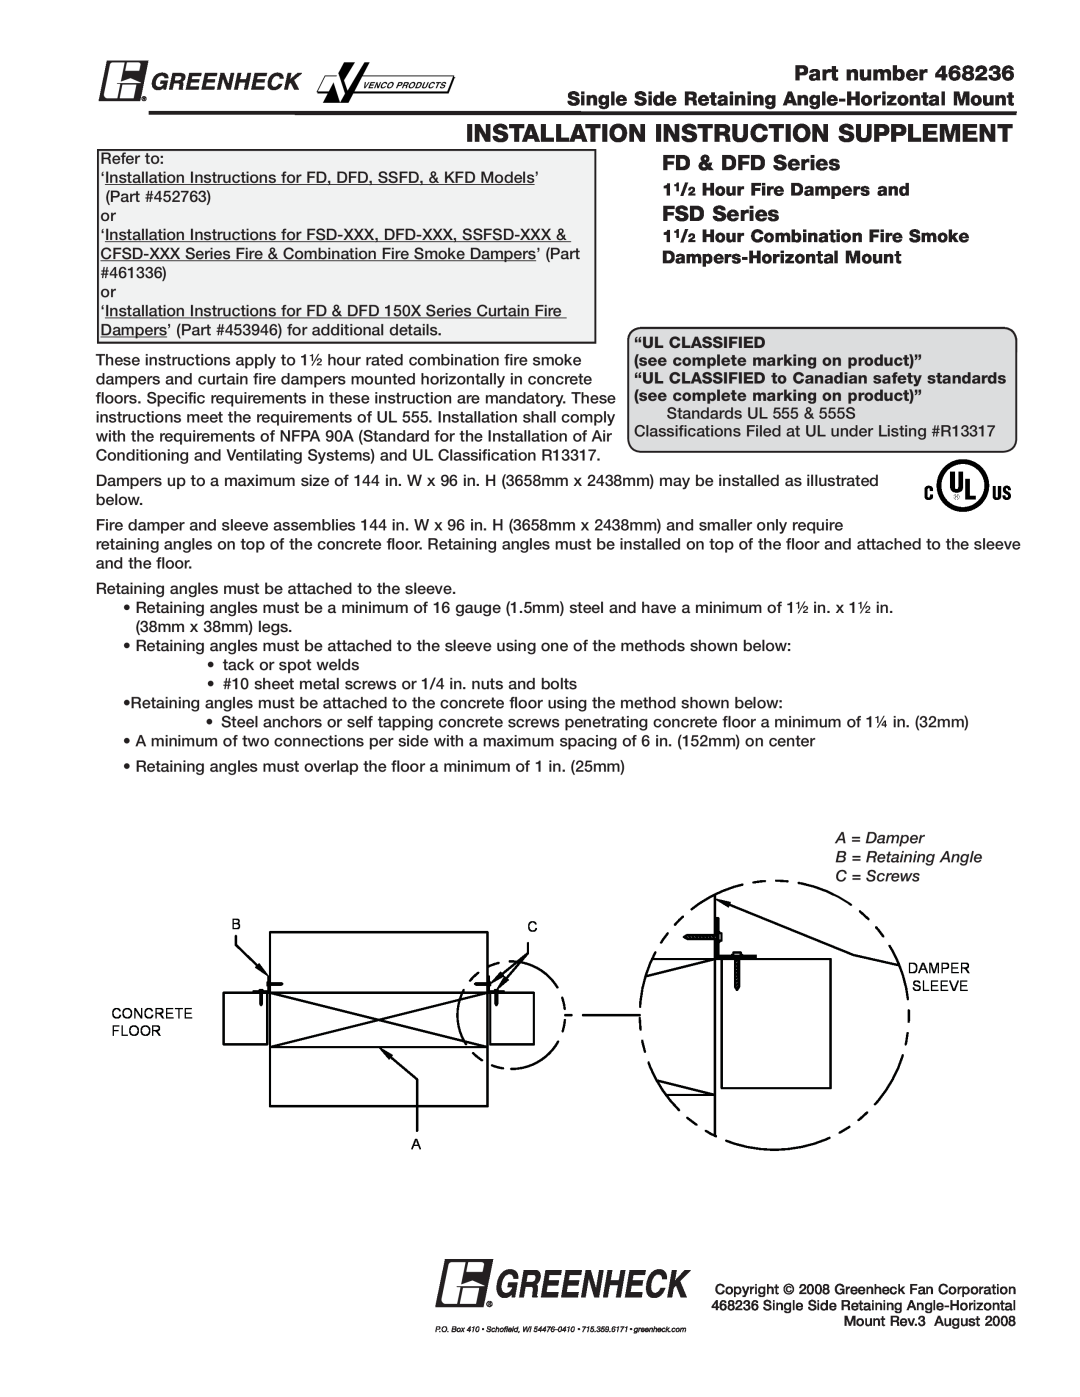 Greenheck Fan FSD-XXX, DFD-XXX installation instructions Installation Instruction Supplement, Part number, FD & DFD Series 